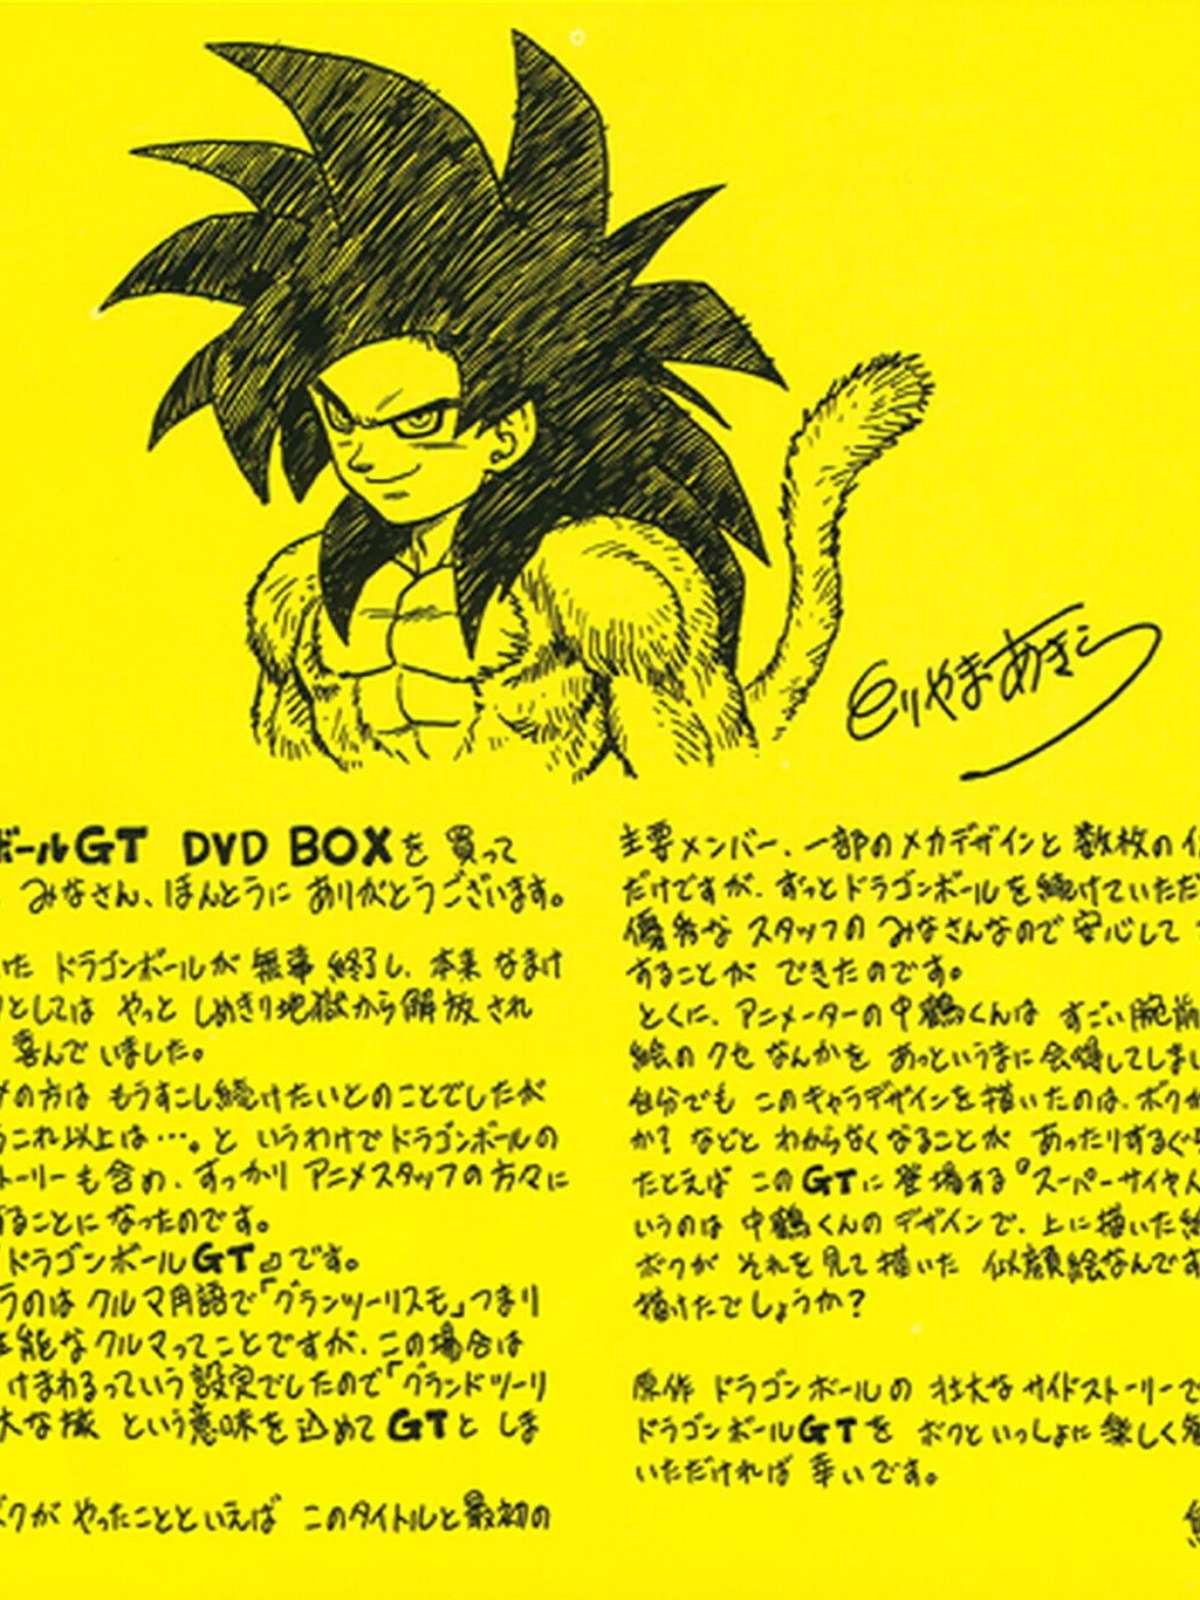 Akira Toriyama desenha própria versão de Goku Super Saiyajin 4 e